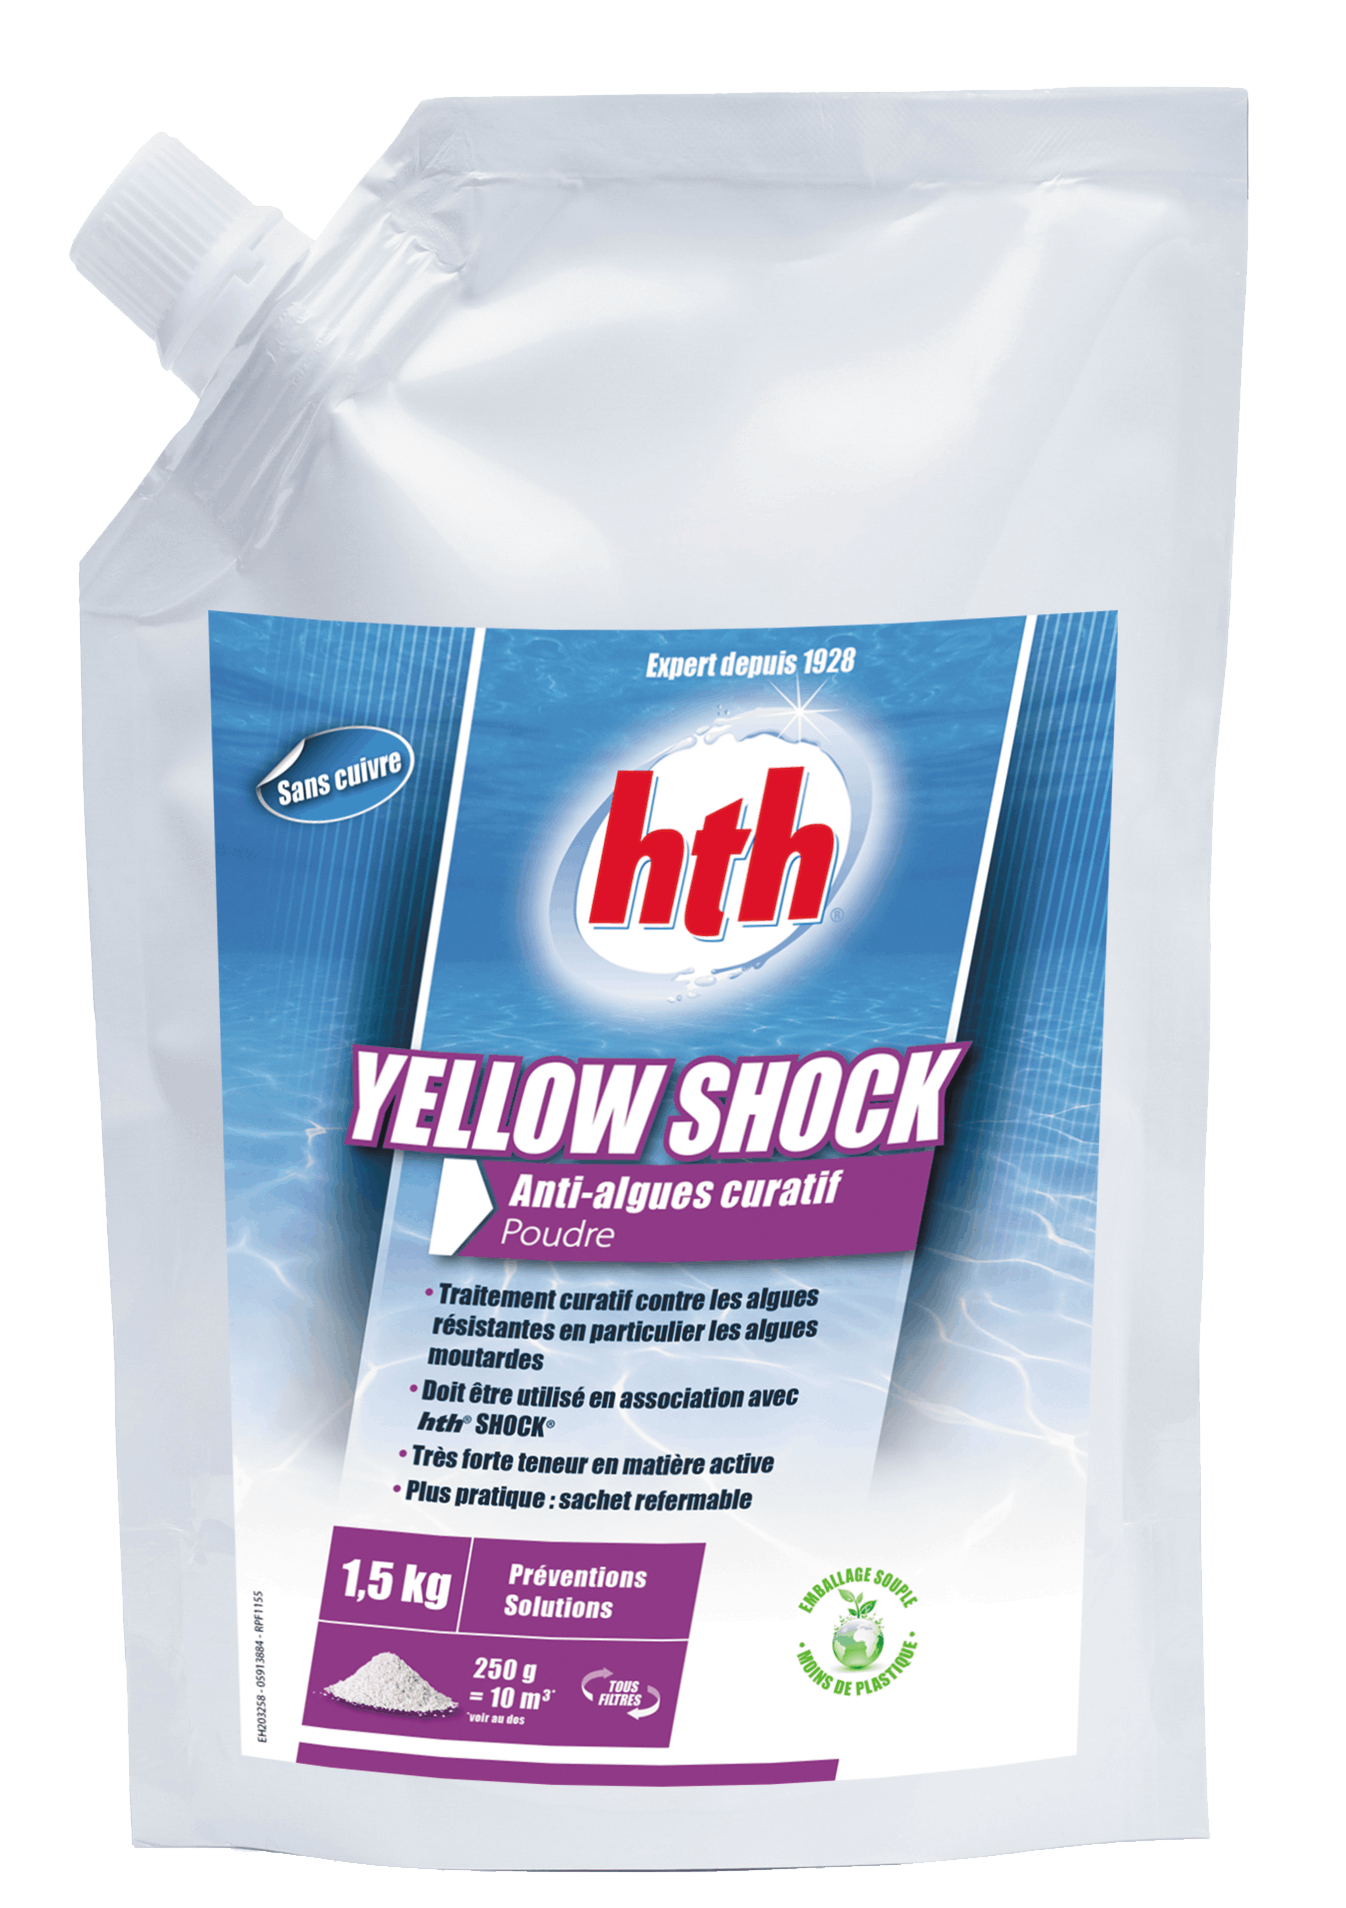 Yellow shock